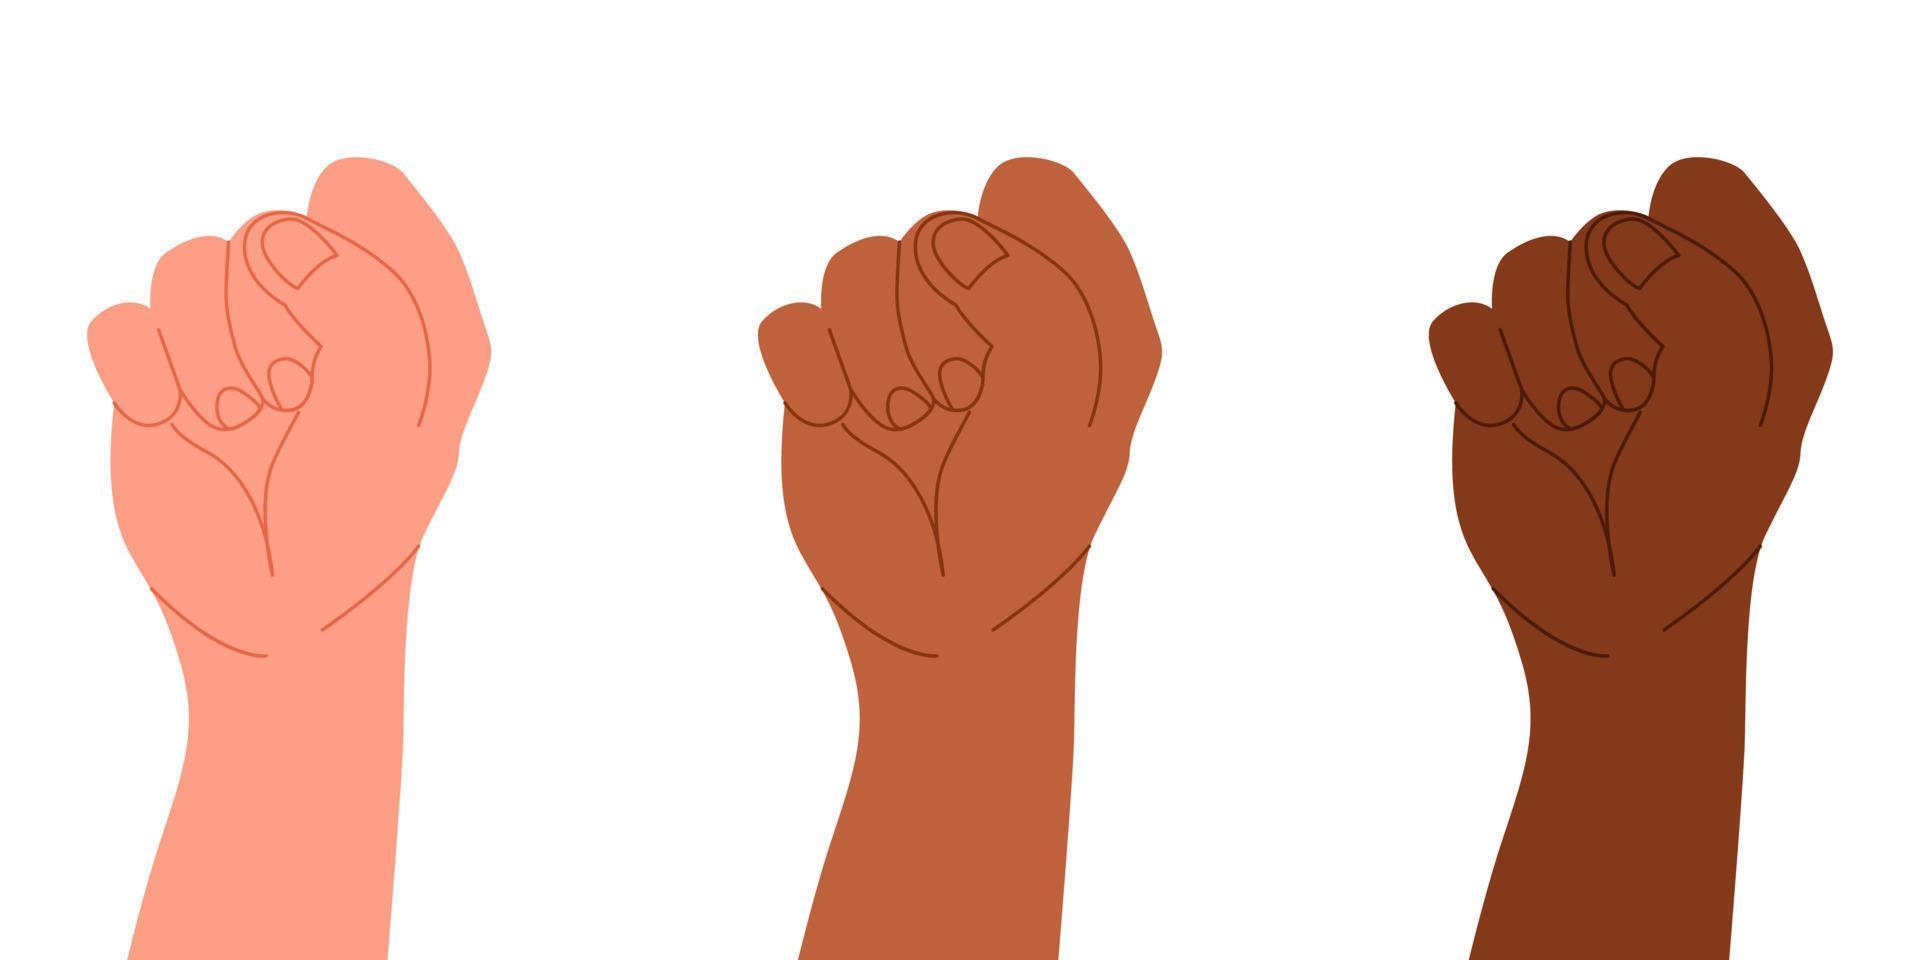 internationaal concept van revolutie. wapens in een gebaar voor gevechten voor rechten. vector illustratie